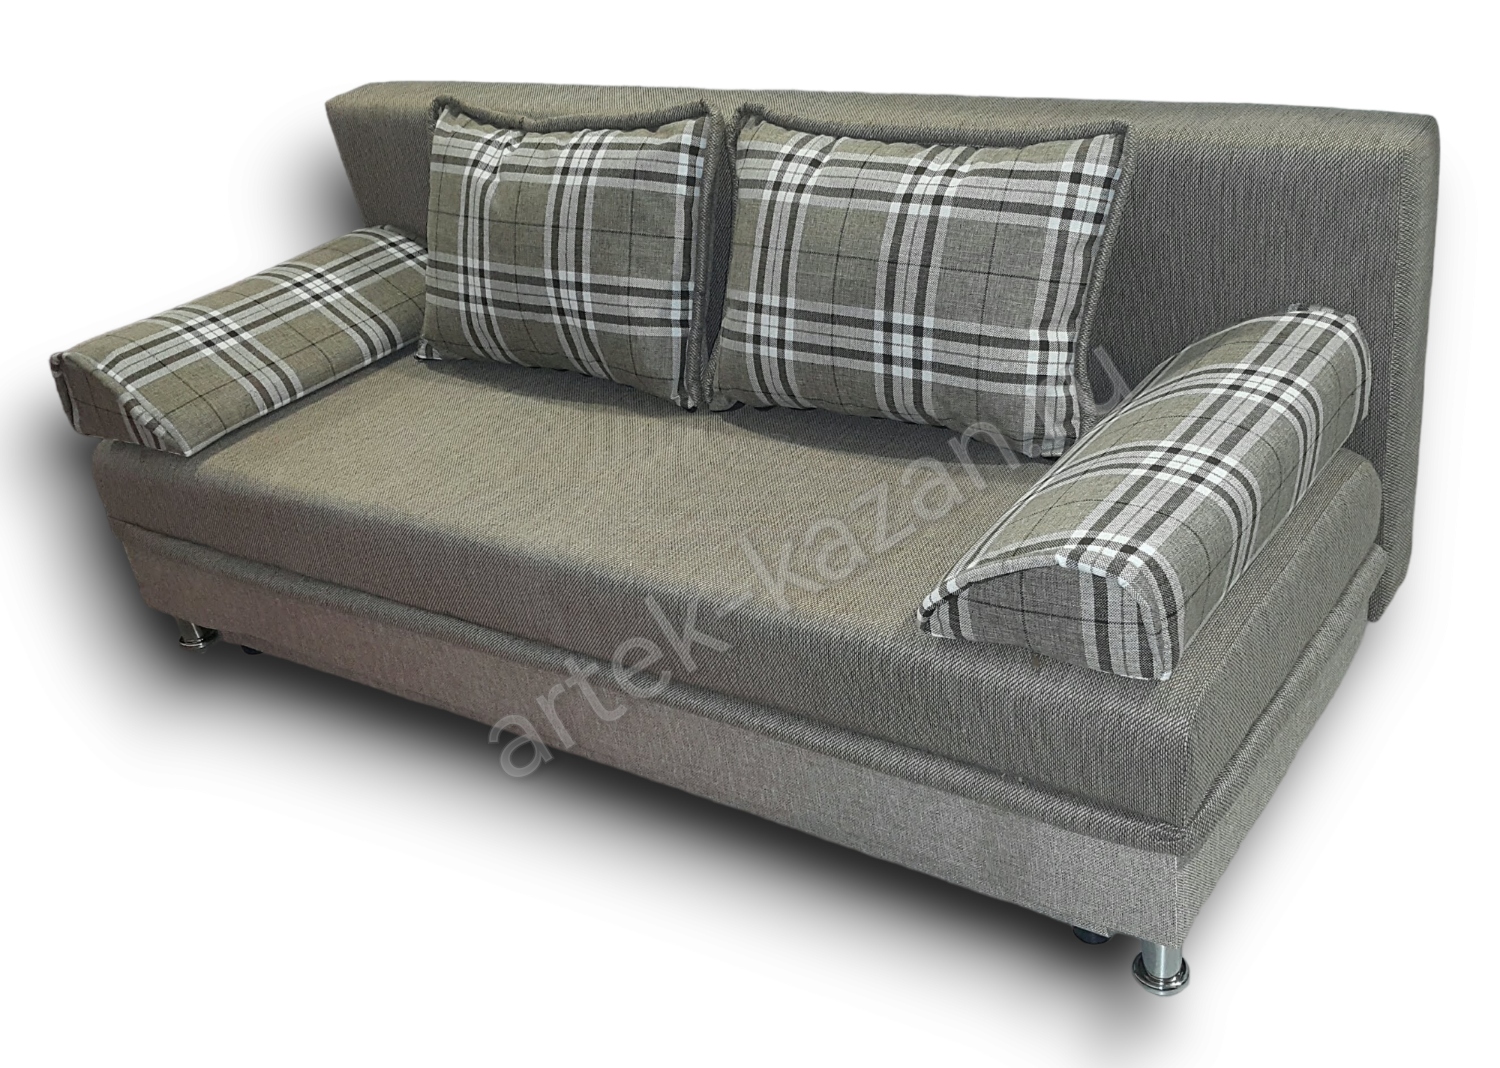 диван еврокнижка Эконом фото № 24. Купить недорогой диван по низкой цене от производителя можно у нас.